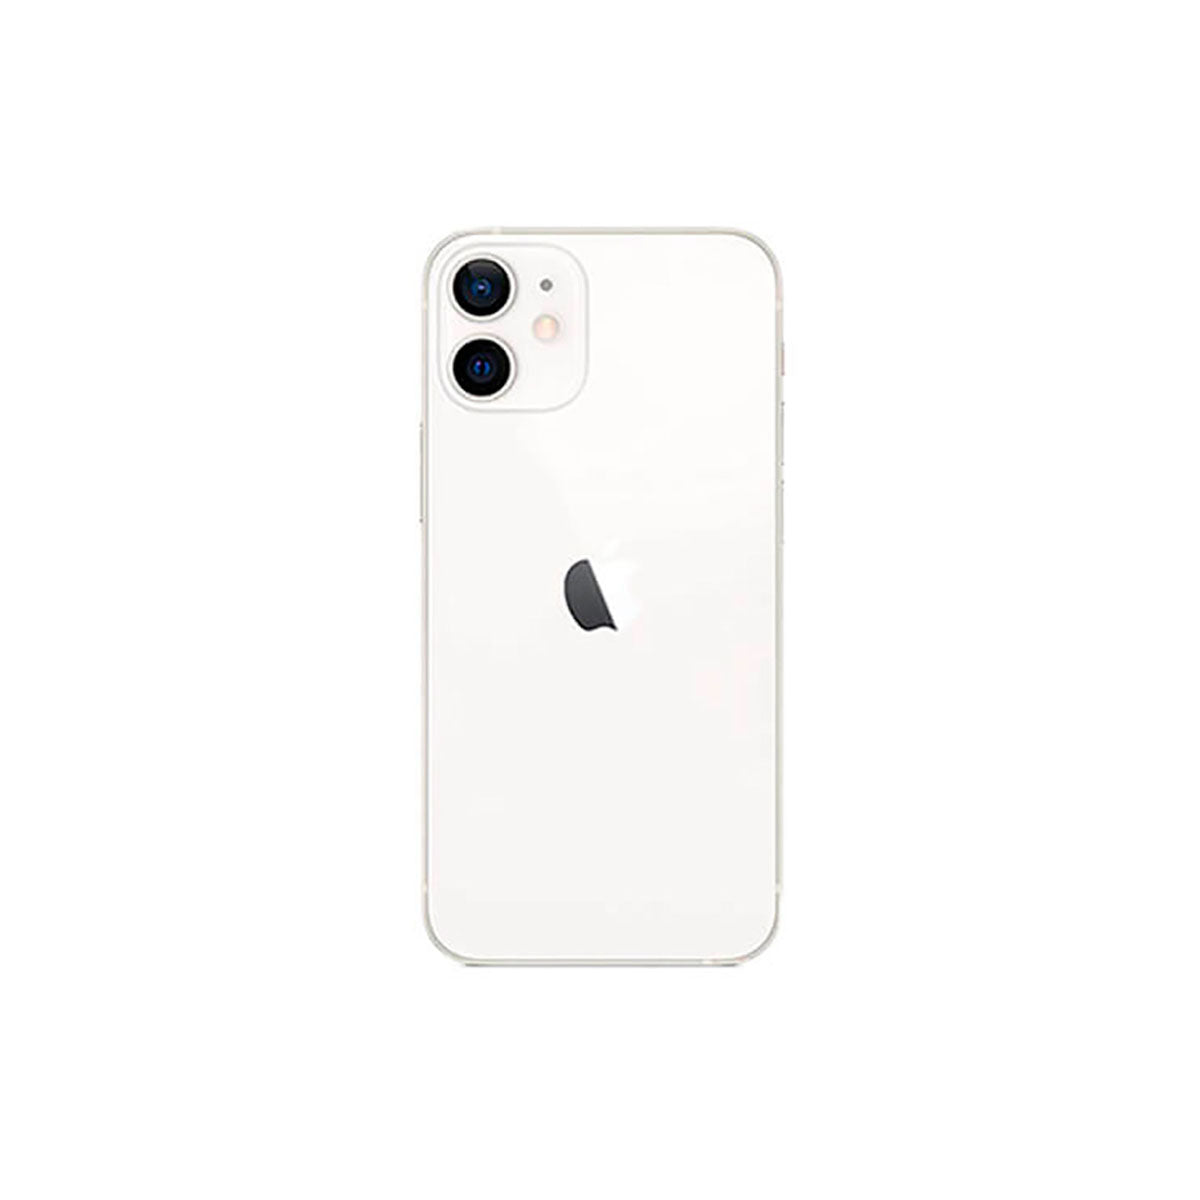 Apple iPhone 12 Mini 64GB Blanco